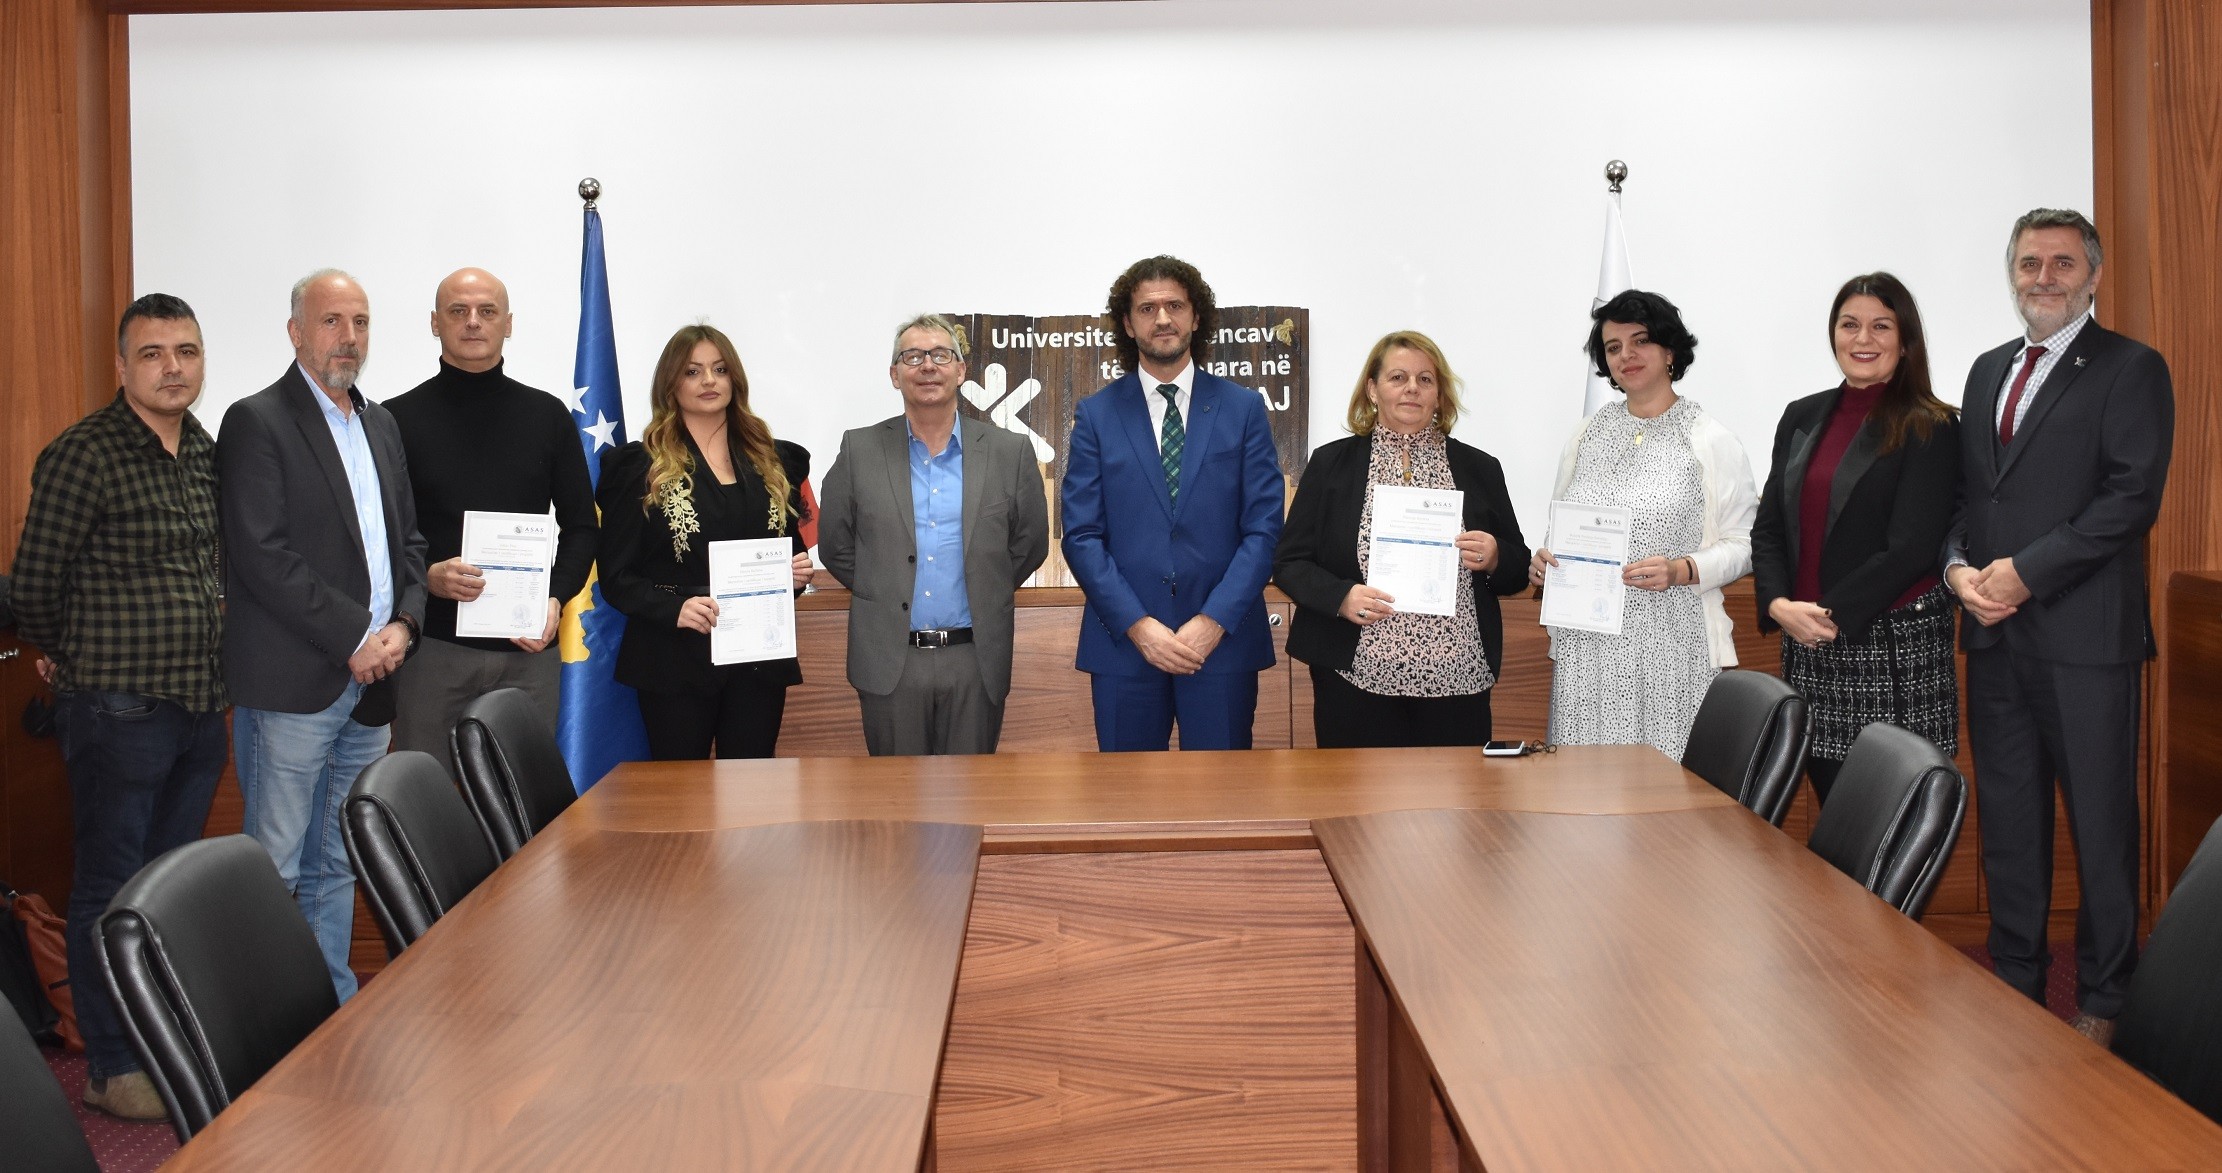 UShAF ofron certifikime ndërkombëtare në bashkëpunim me institucione austriake të arsimit  